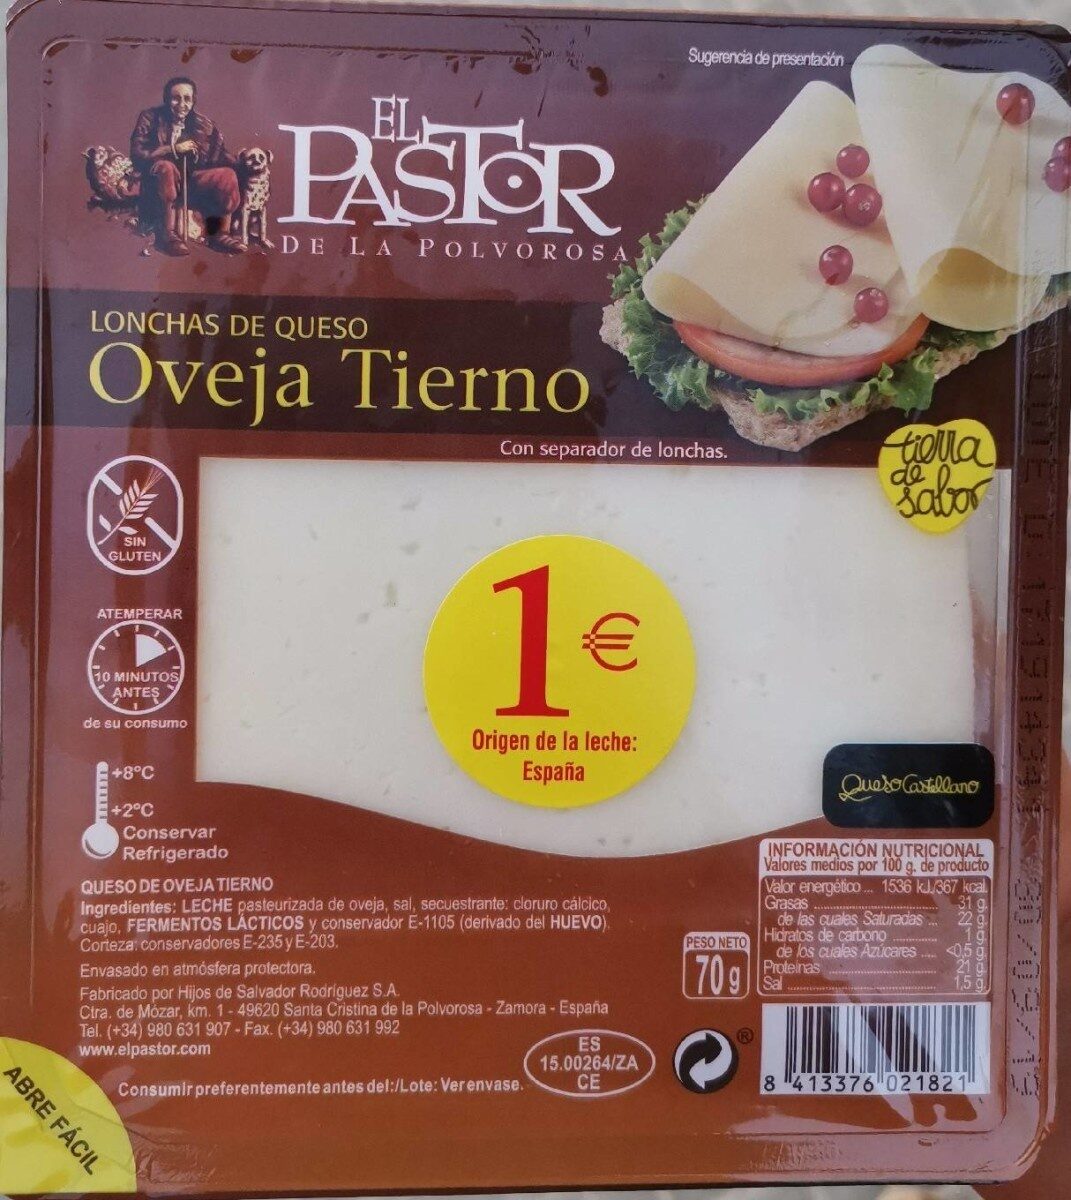 Lonchas de queso oveja tierno - Product - es